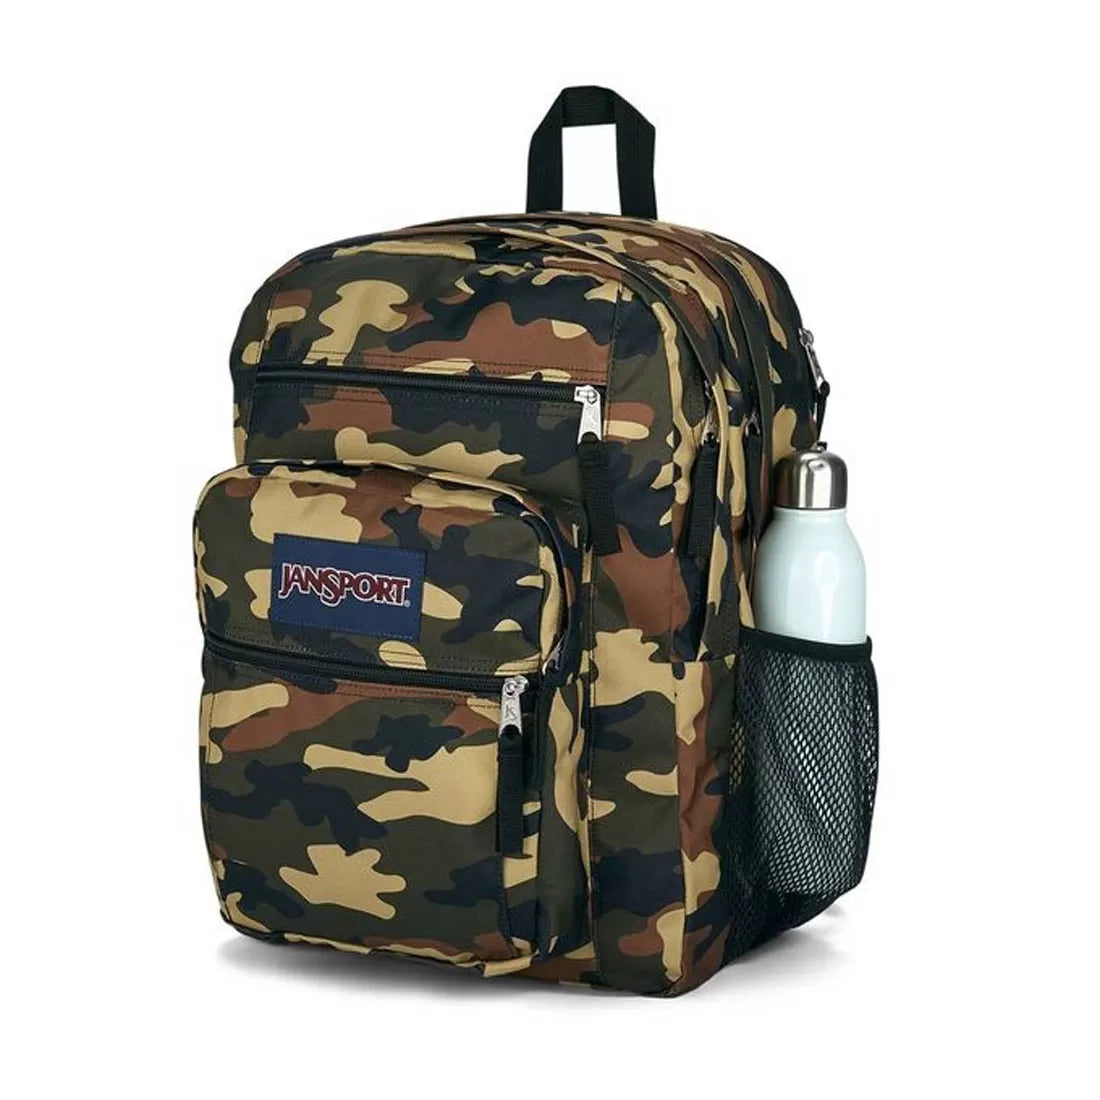 Student Buckshot Backpack